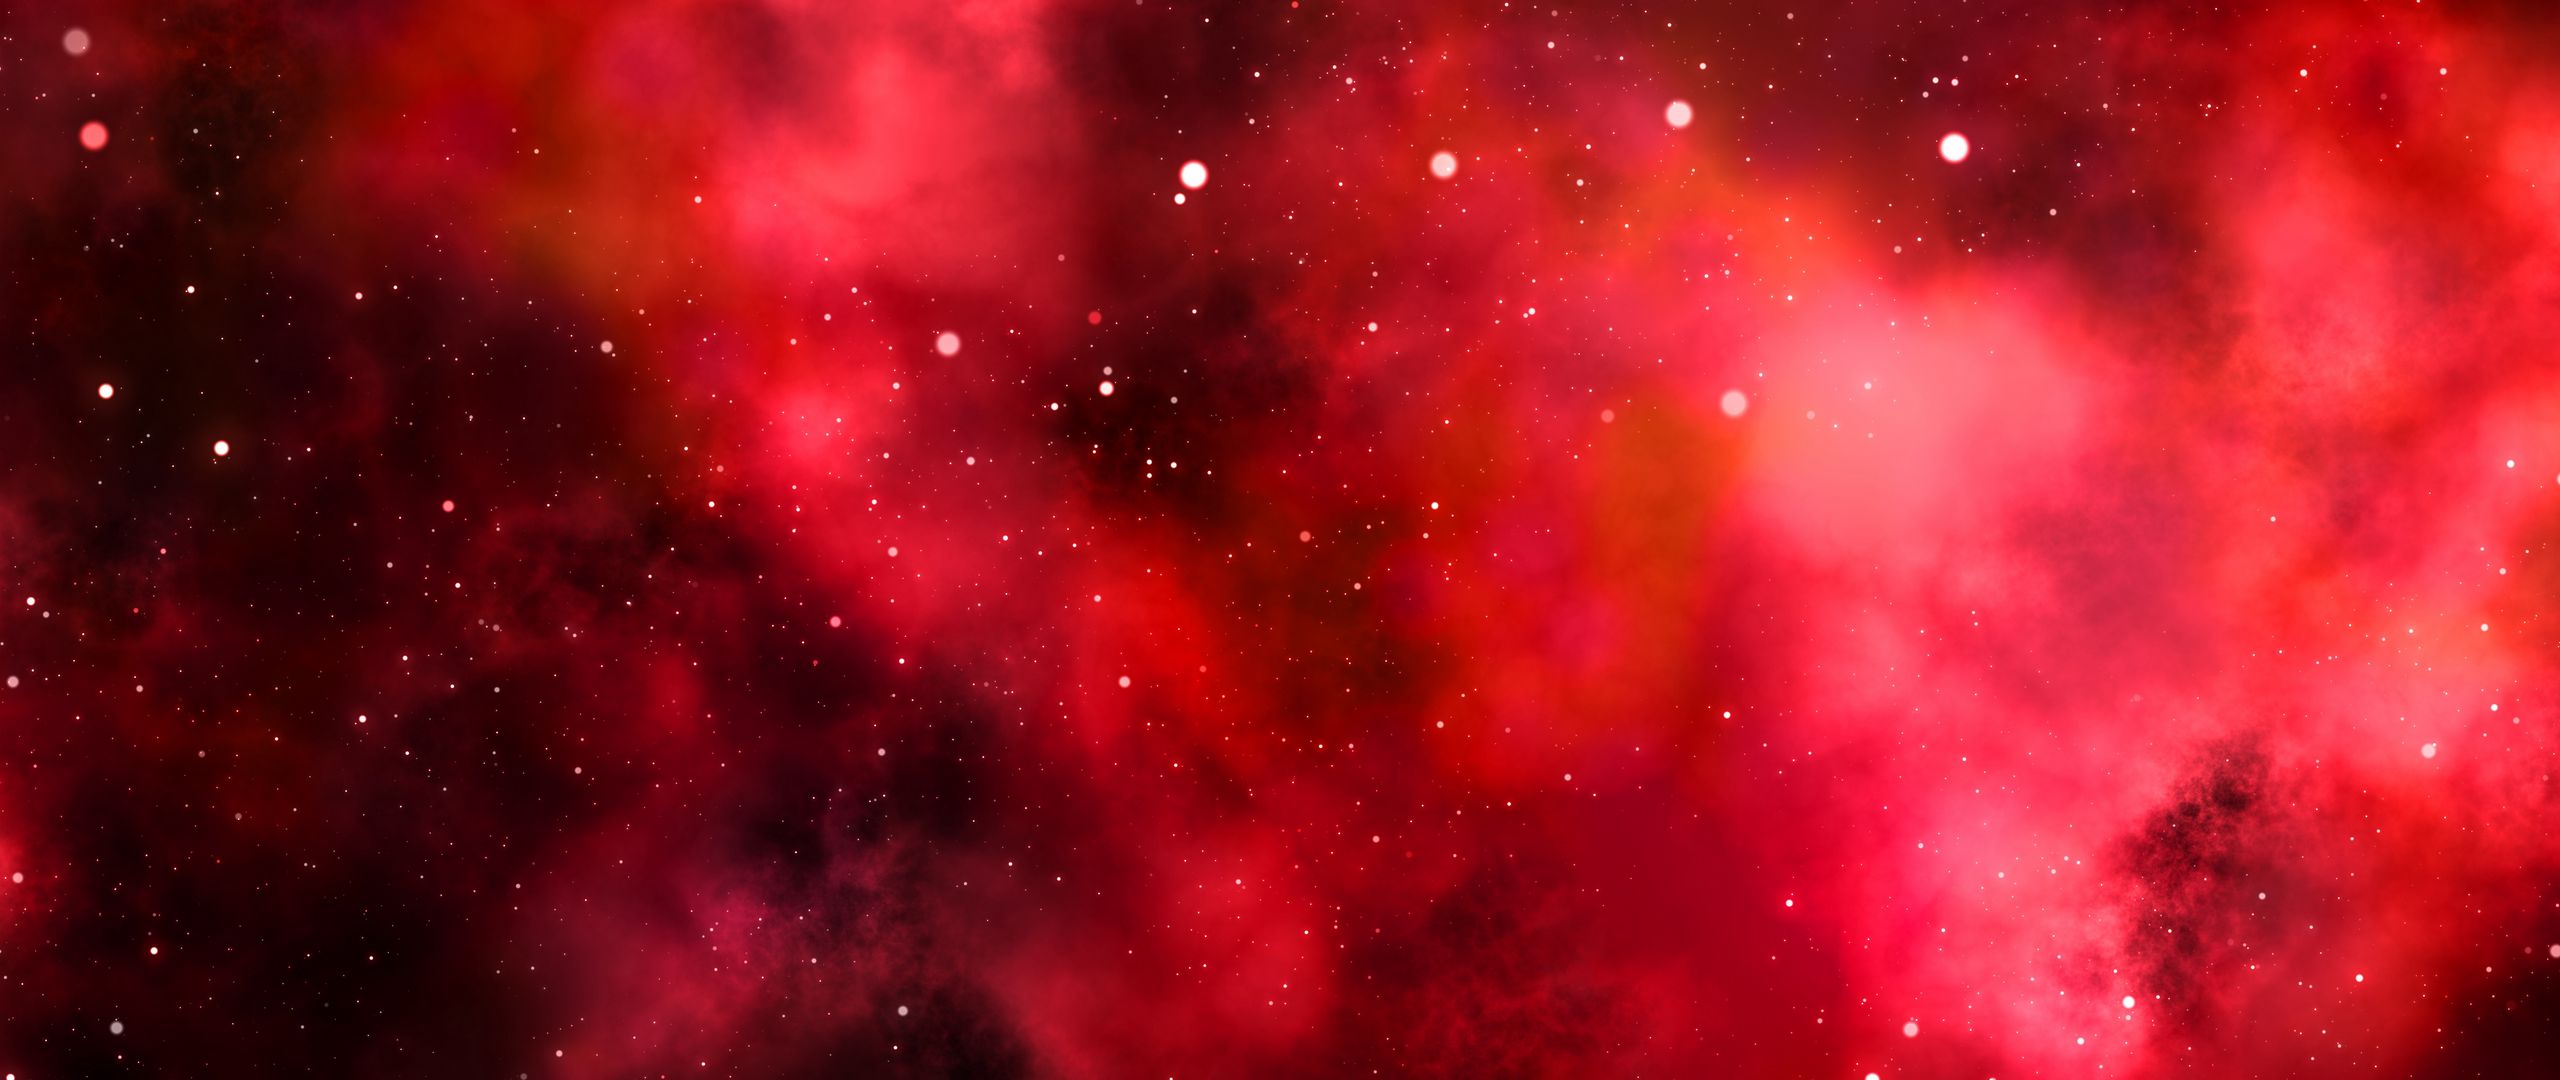 galaxy s7 fondo de pantalla hd 1080p,nebulosa,rojo,objeto astronómico,rosado,cielo